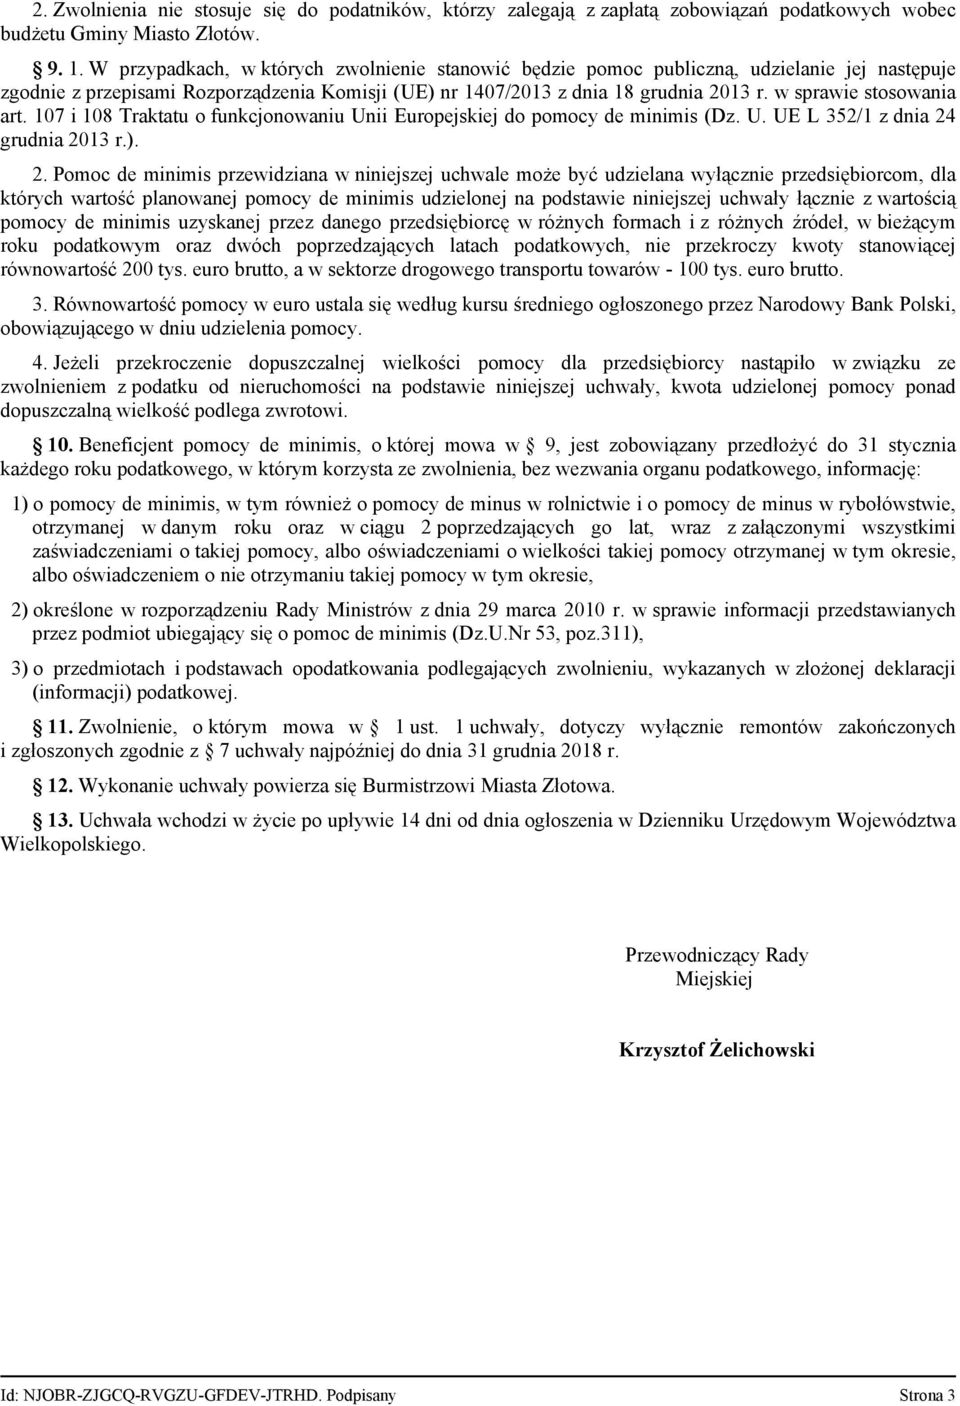 w sprawie stosowania art. 107 i 108 Traktatu o funkcjonowaniu Unii Europejskiej do pomocy de minimis (Dz. U. UE L 352/1 z dnia 24